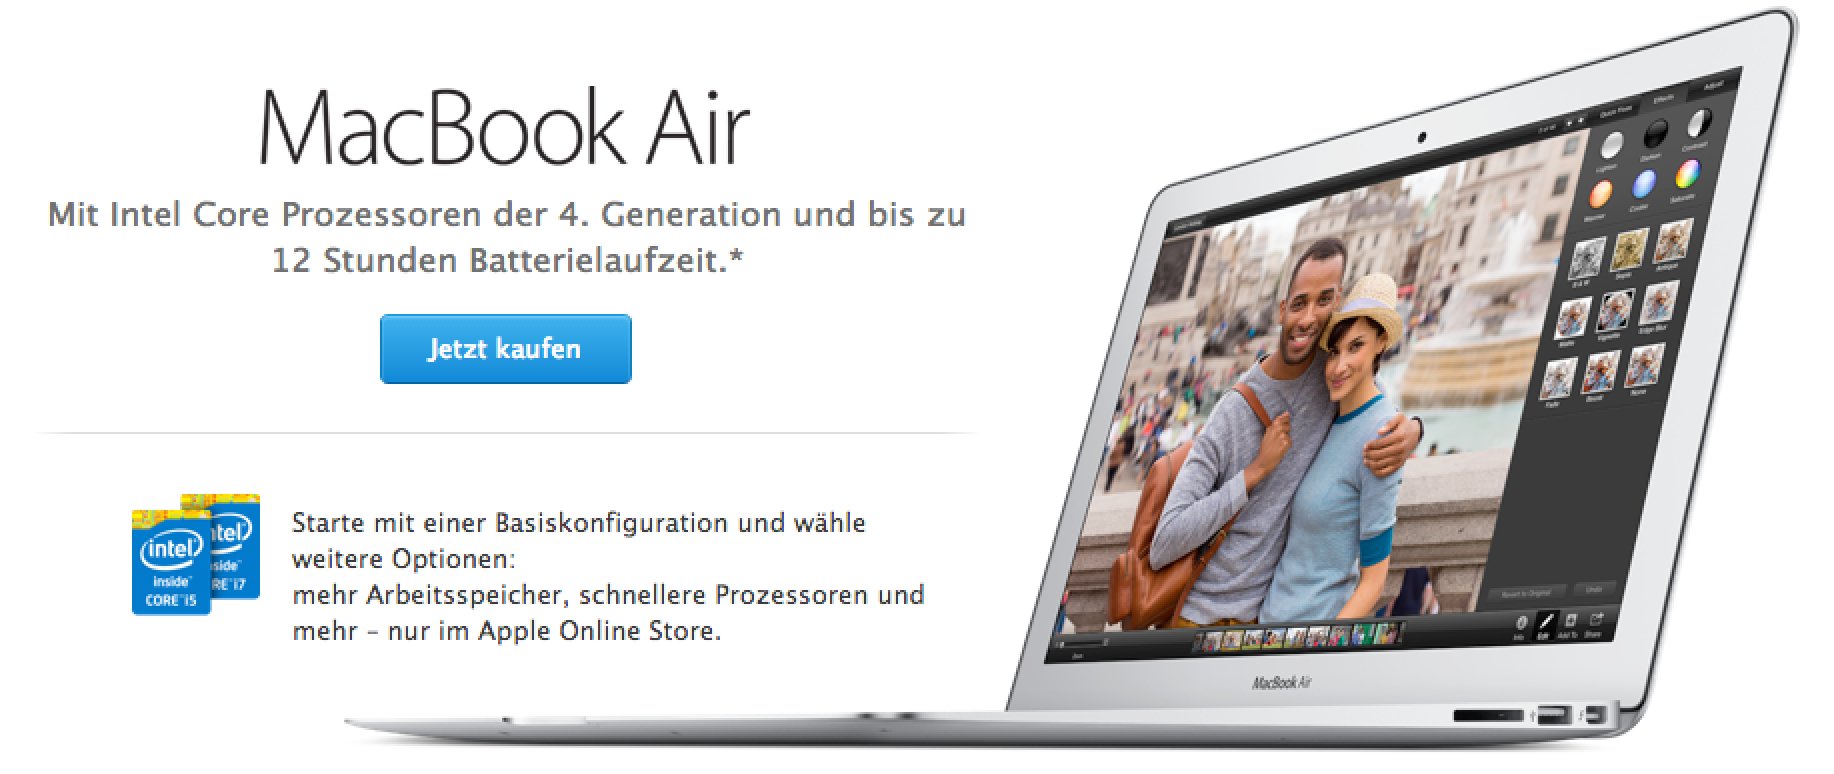 Macbook Air 2014 ist da - schneller und 100 Euro billiger! 7